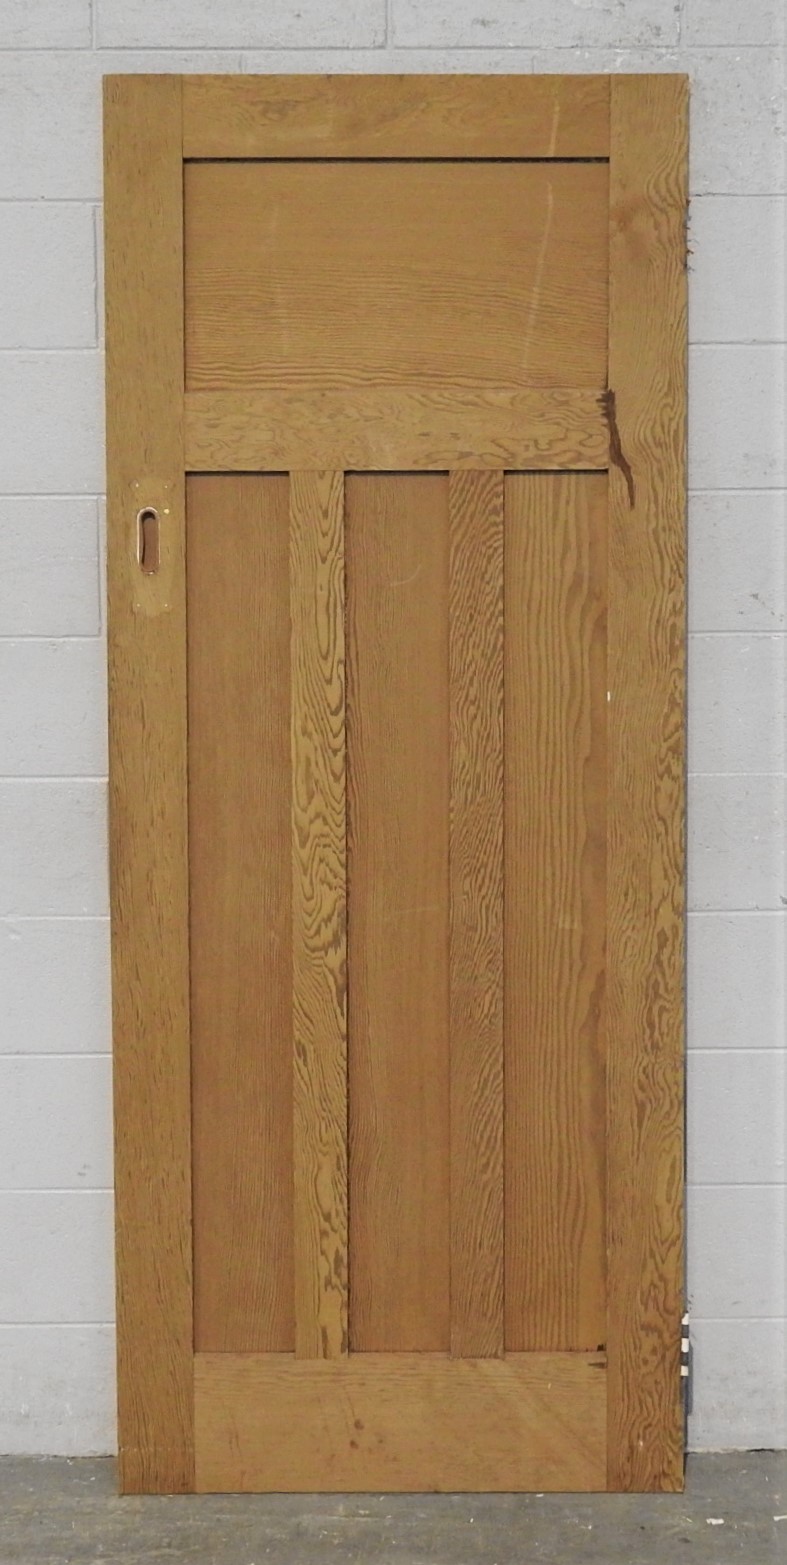 Wooden Bungalow Interior 3 Panel Door - Unpainted Unhung